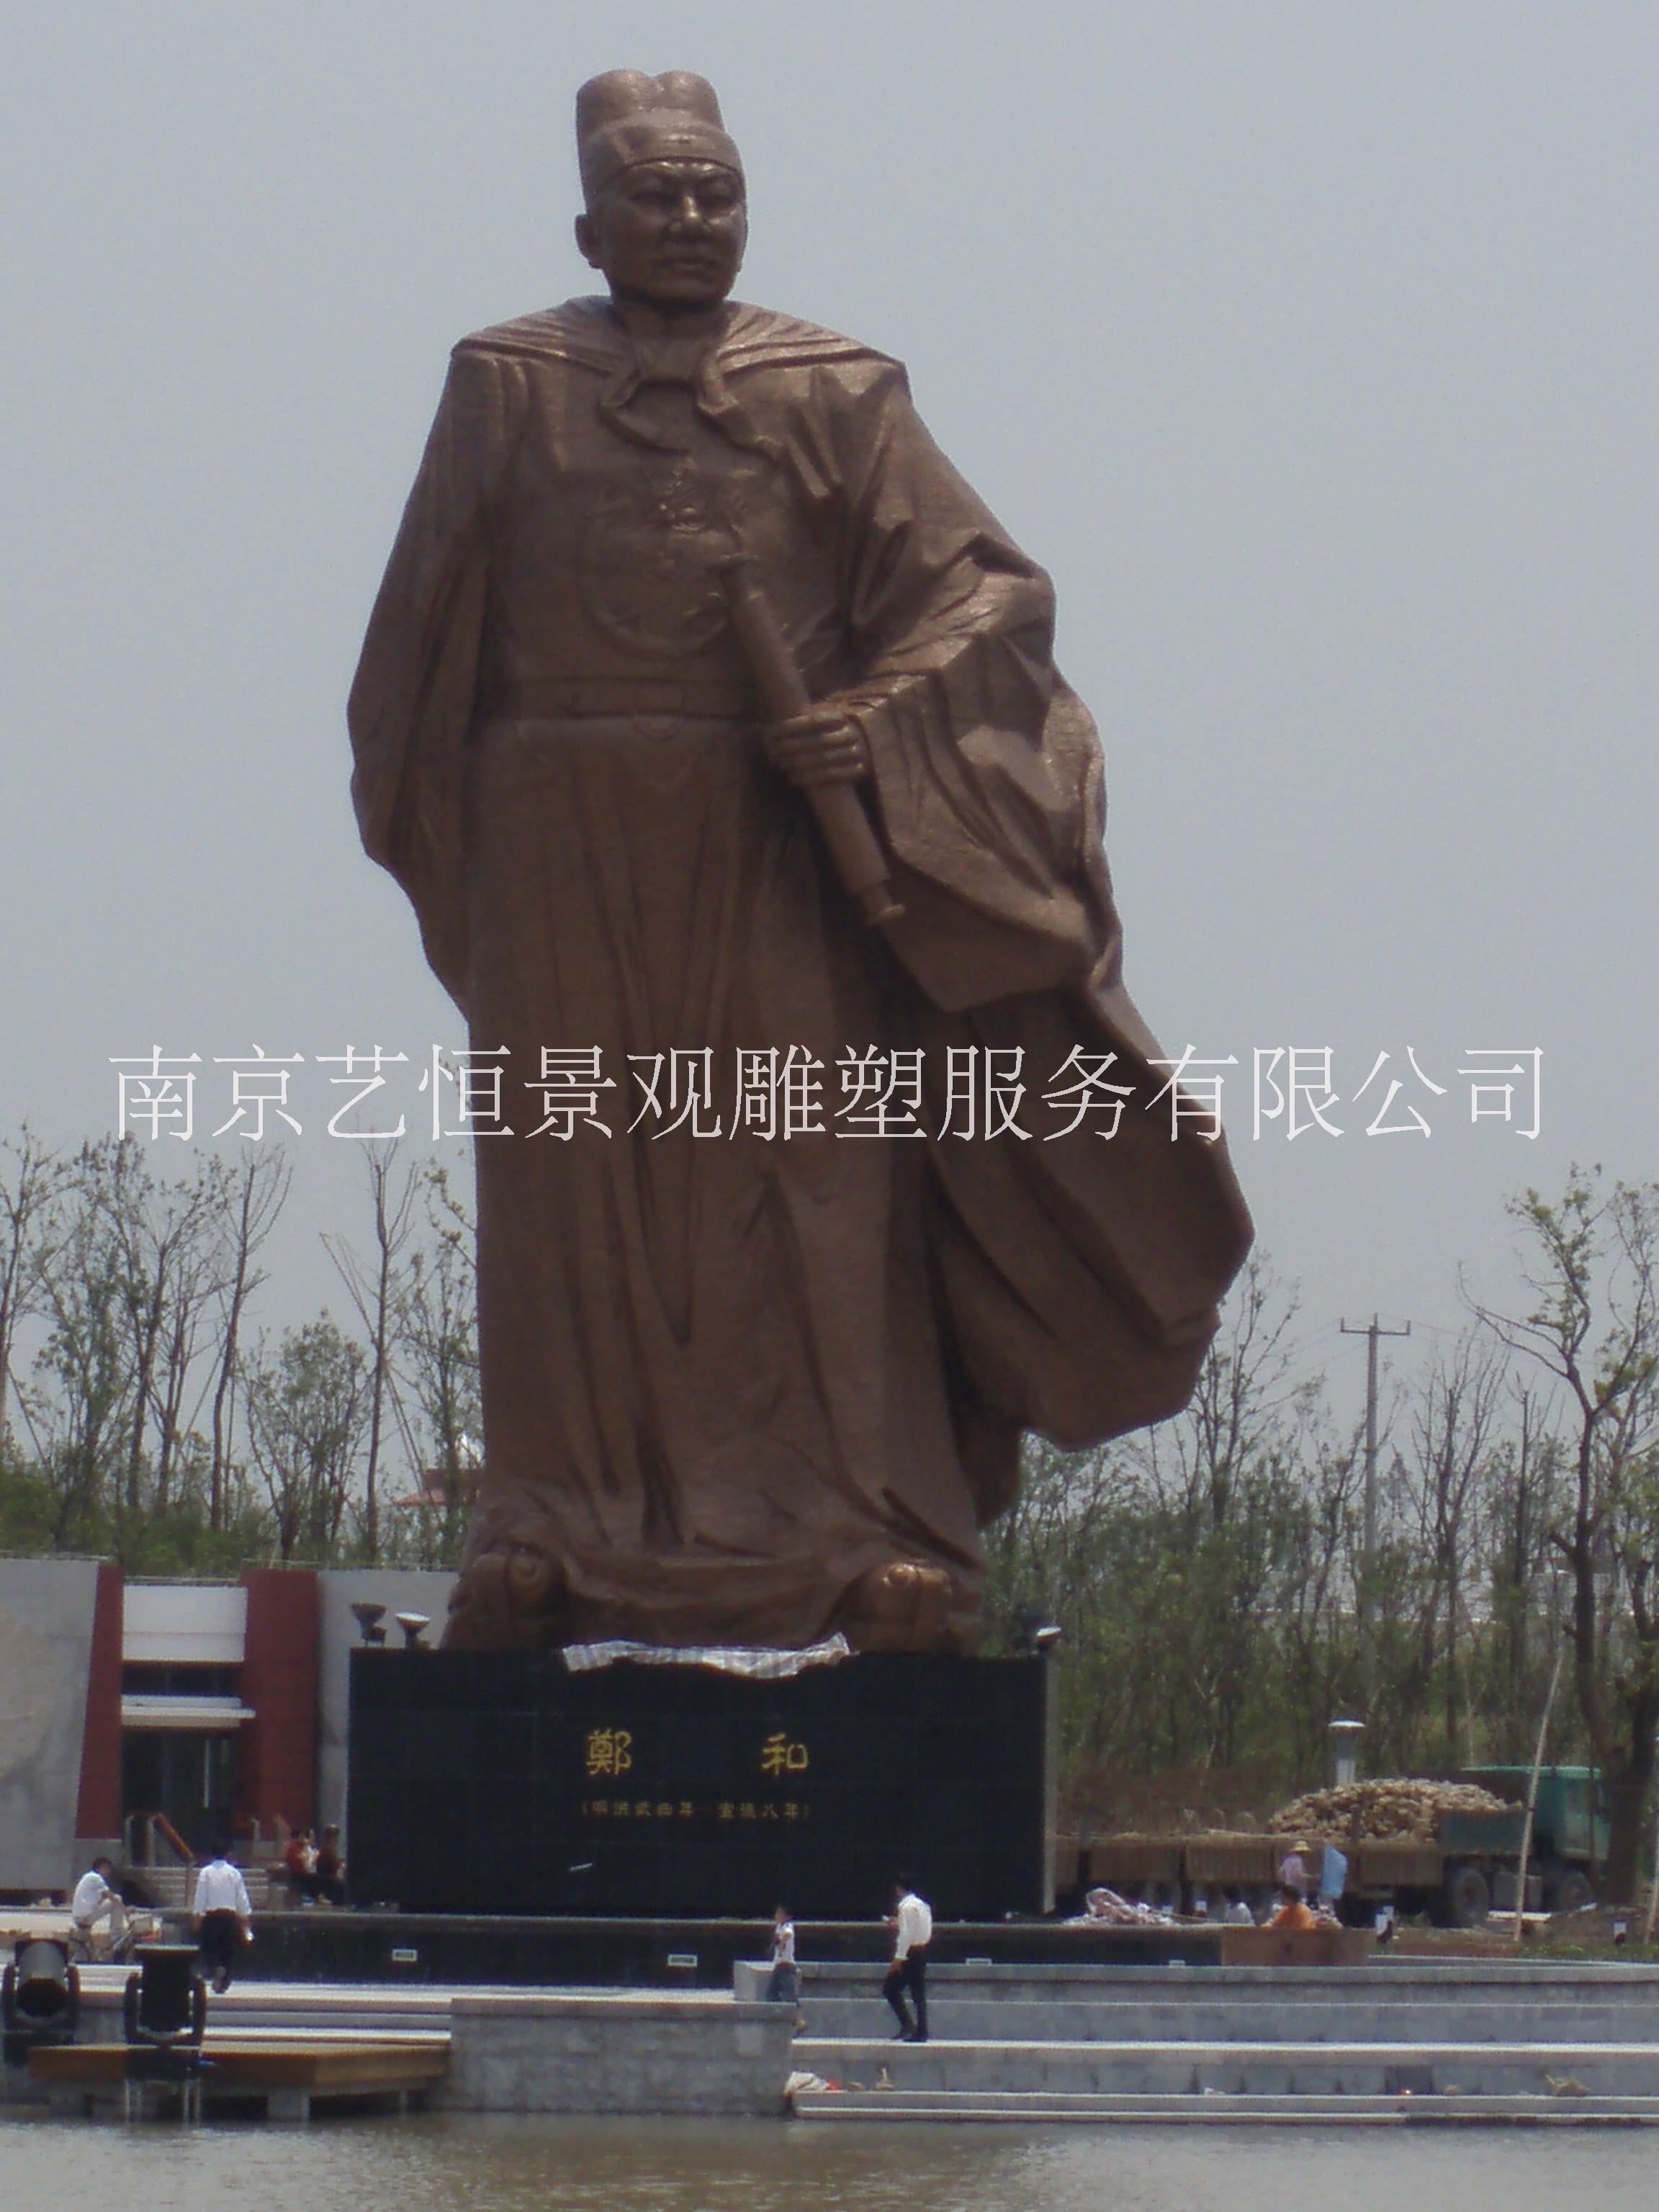 雕塑厂家制作雕像 大型雕像 南京雕塑厂制作雕像 人物雕像 西方雕像